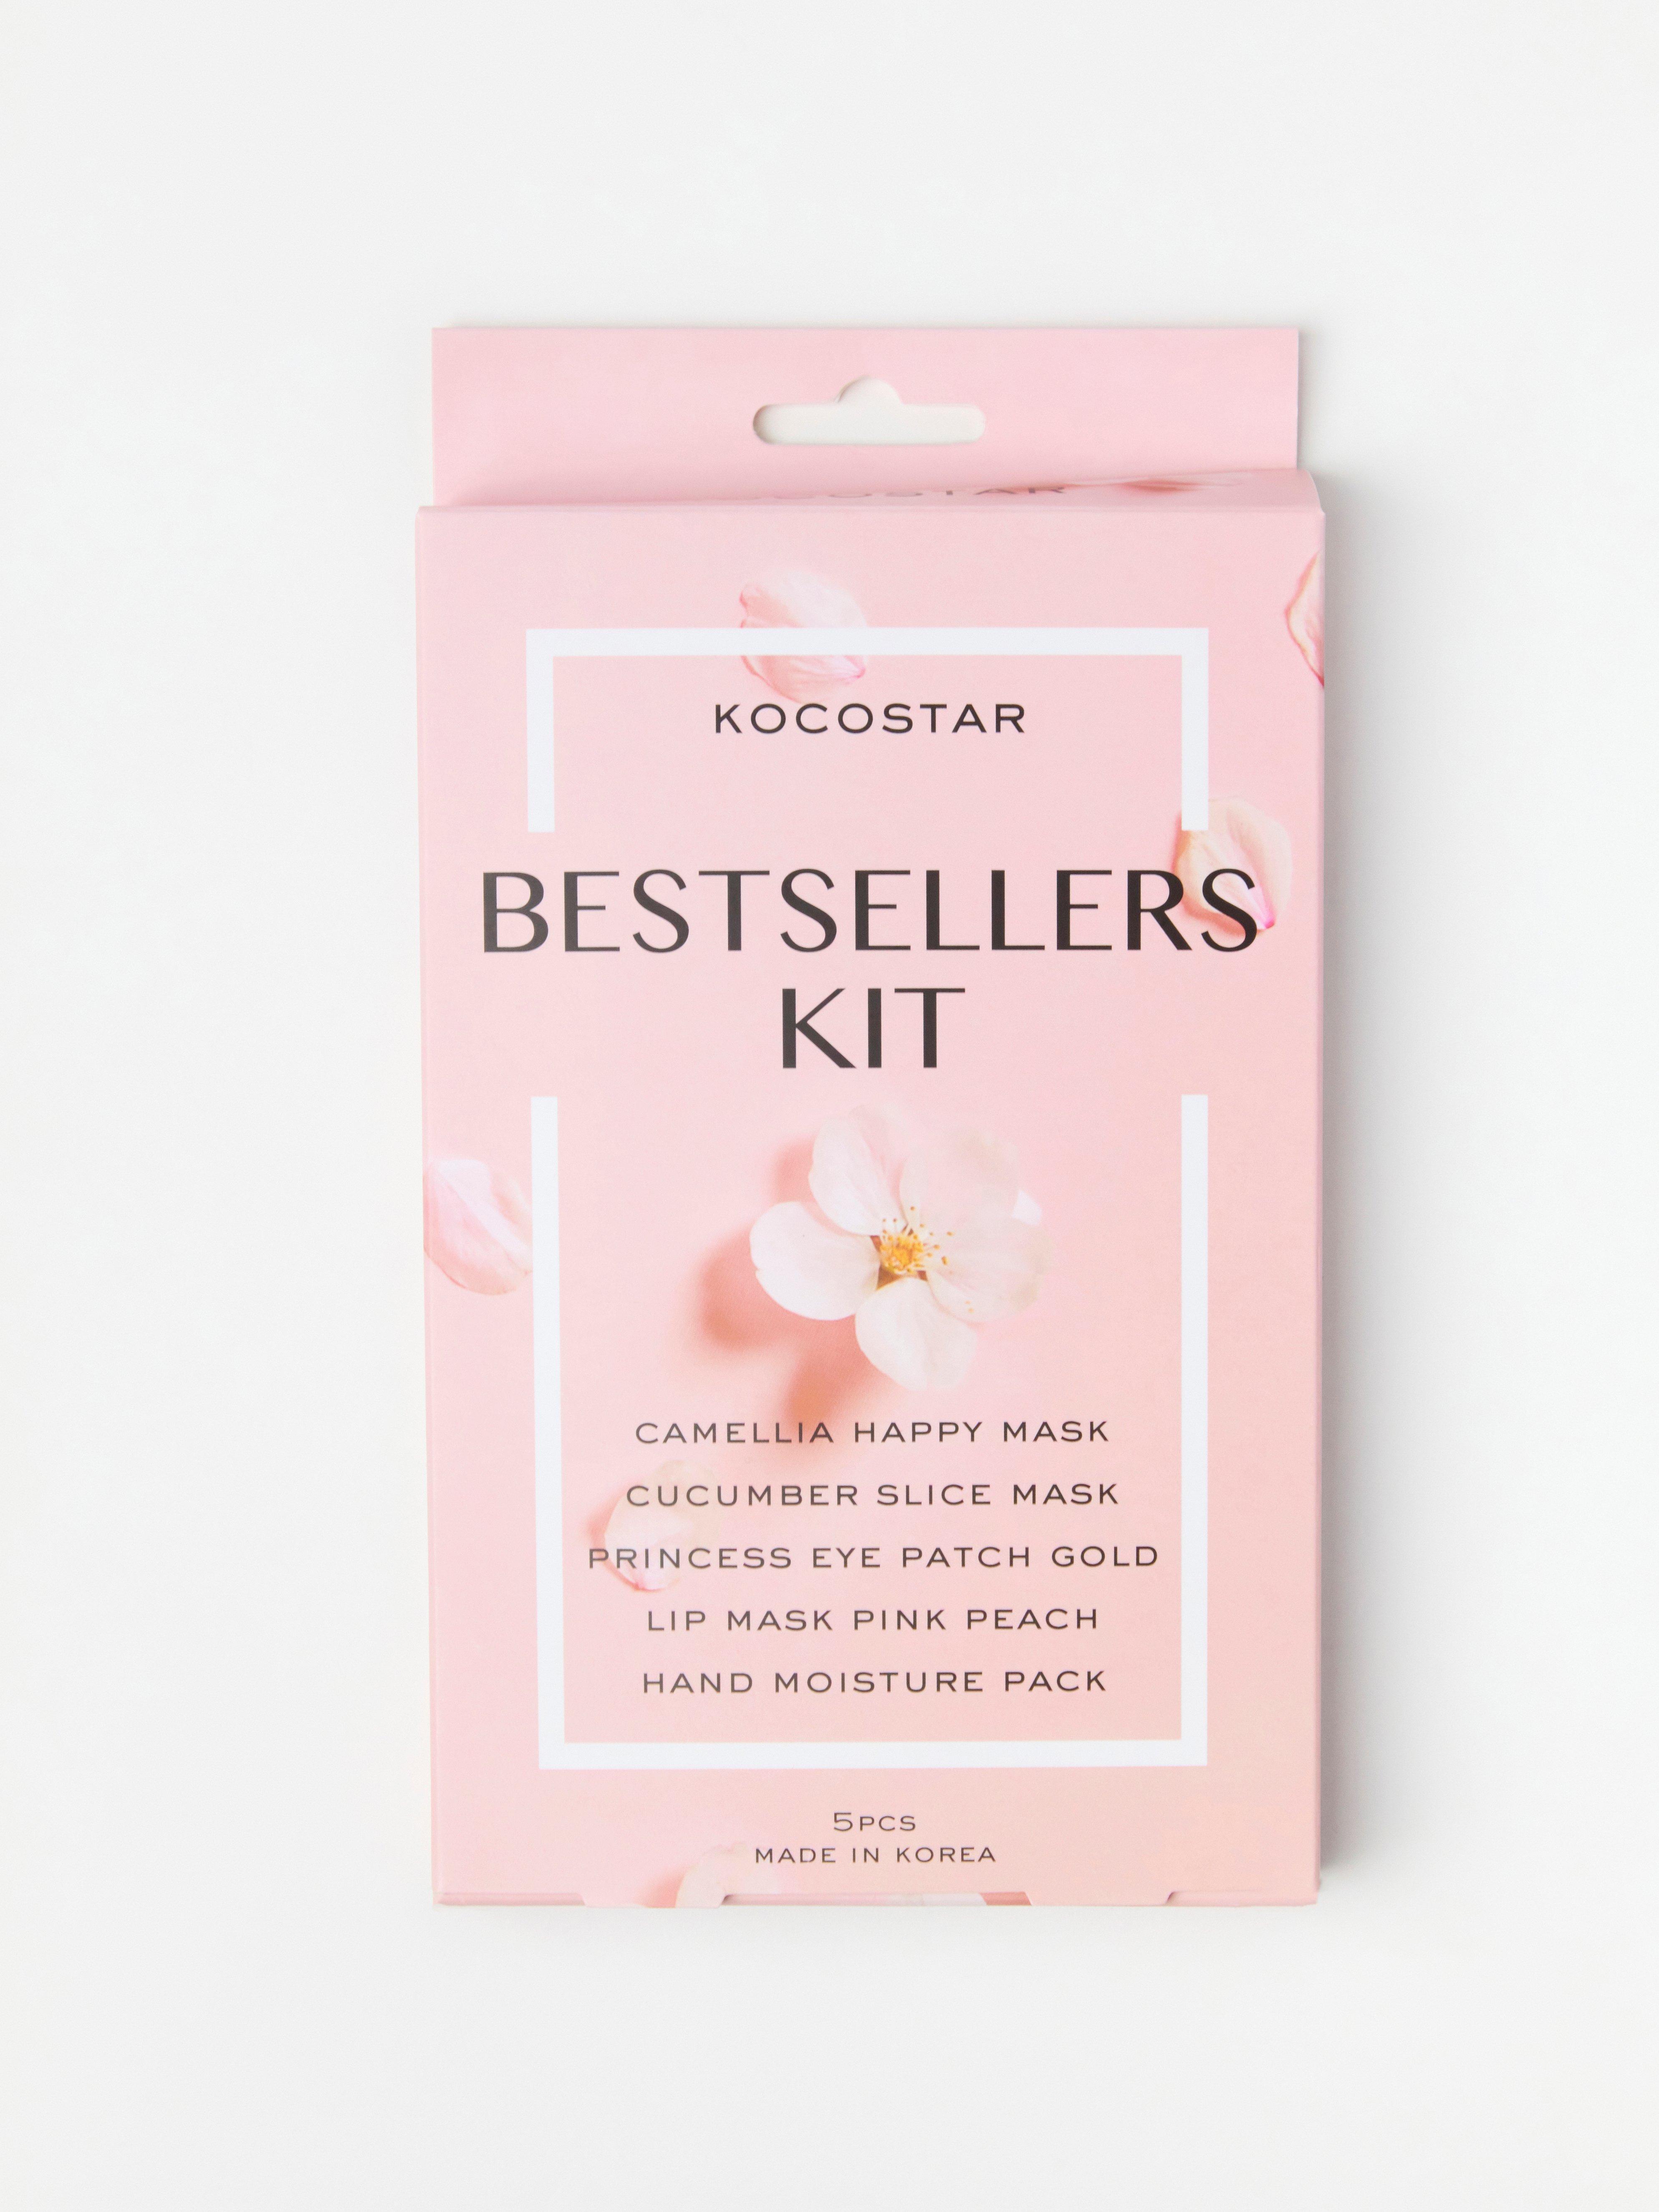 Kocostar Bestseller Kit